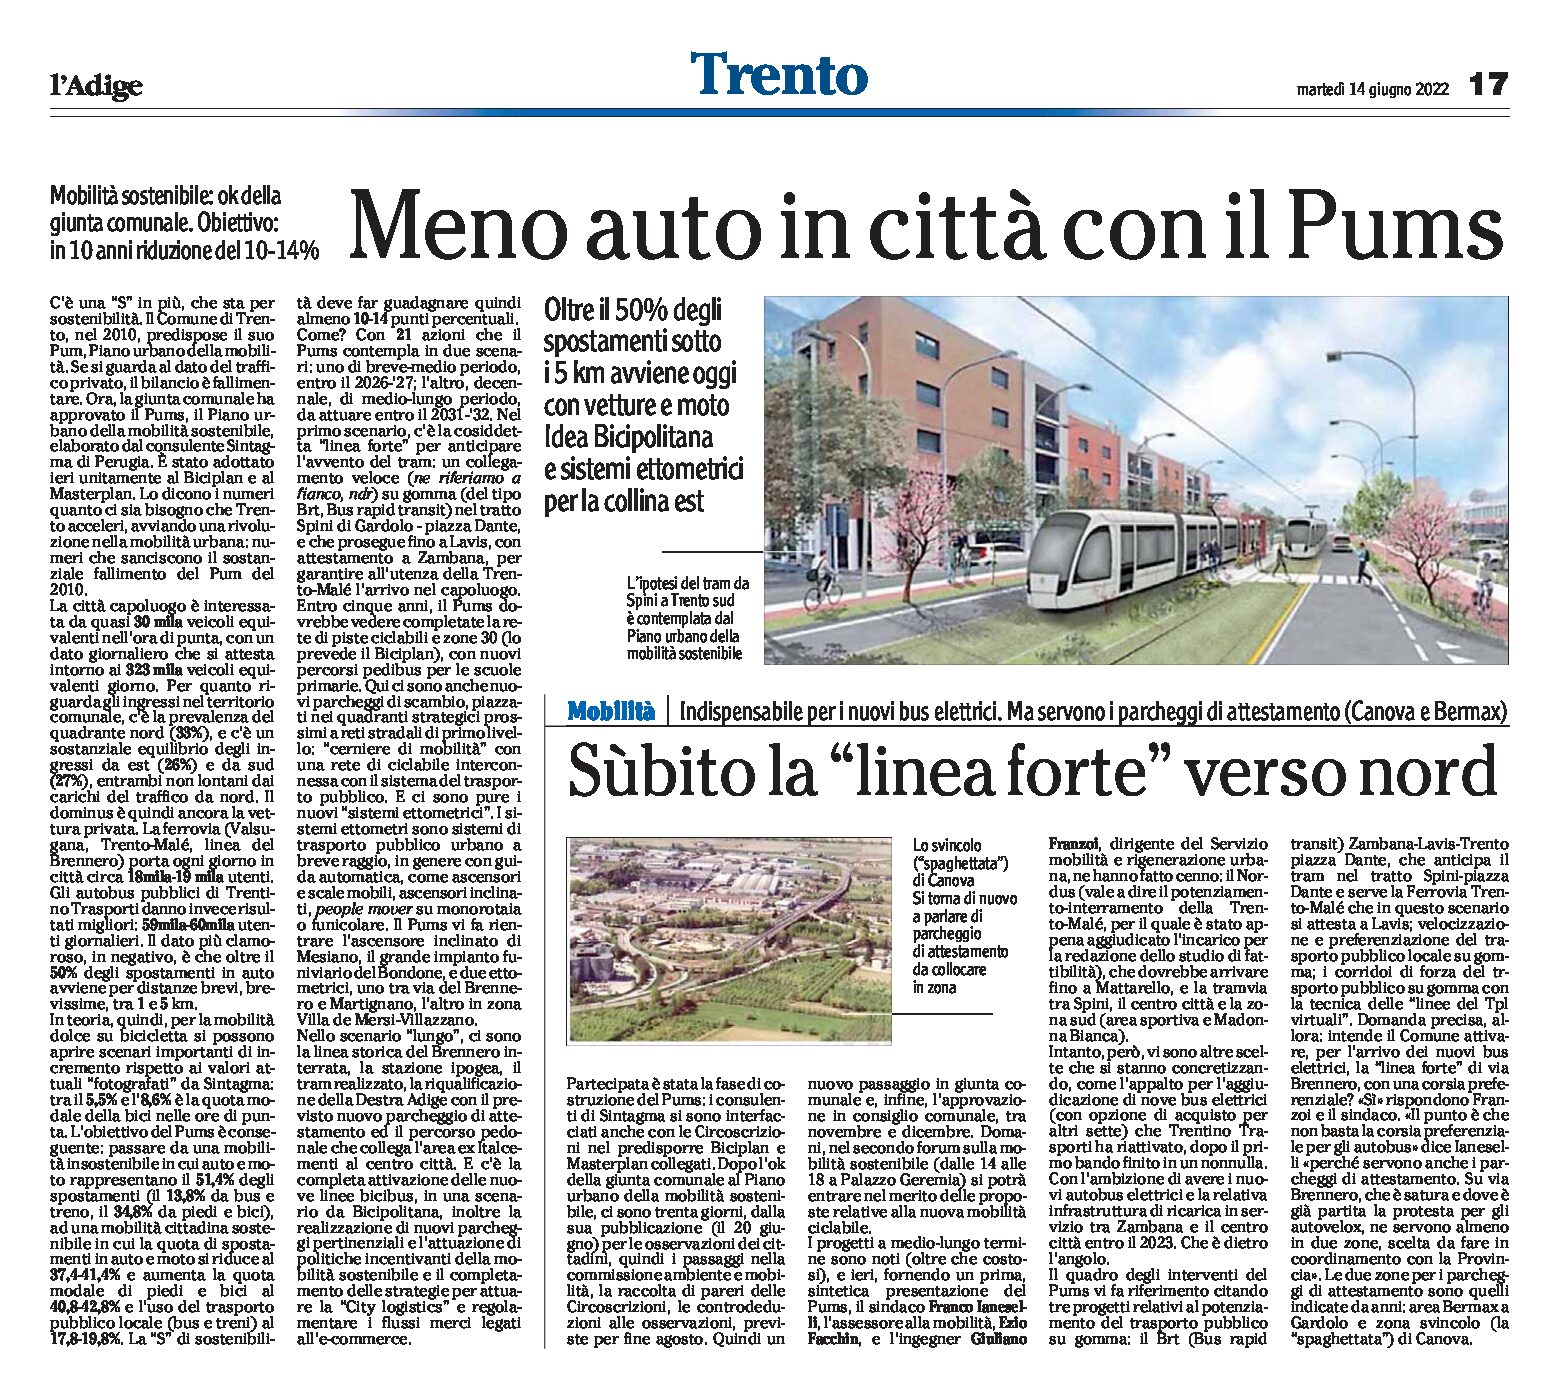 Trento, mobilità: meno auto in città con il Pums